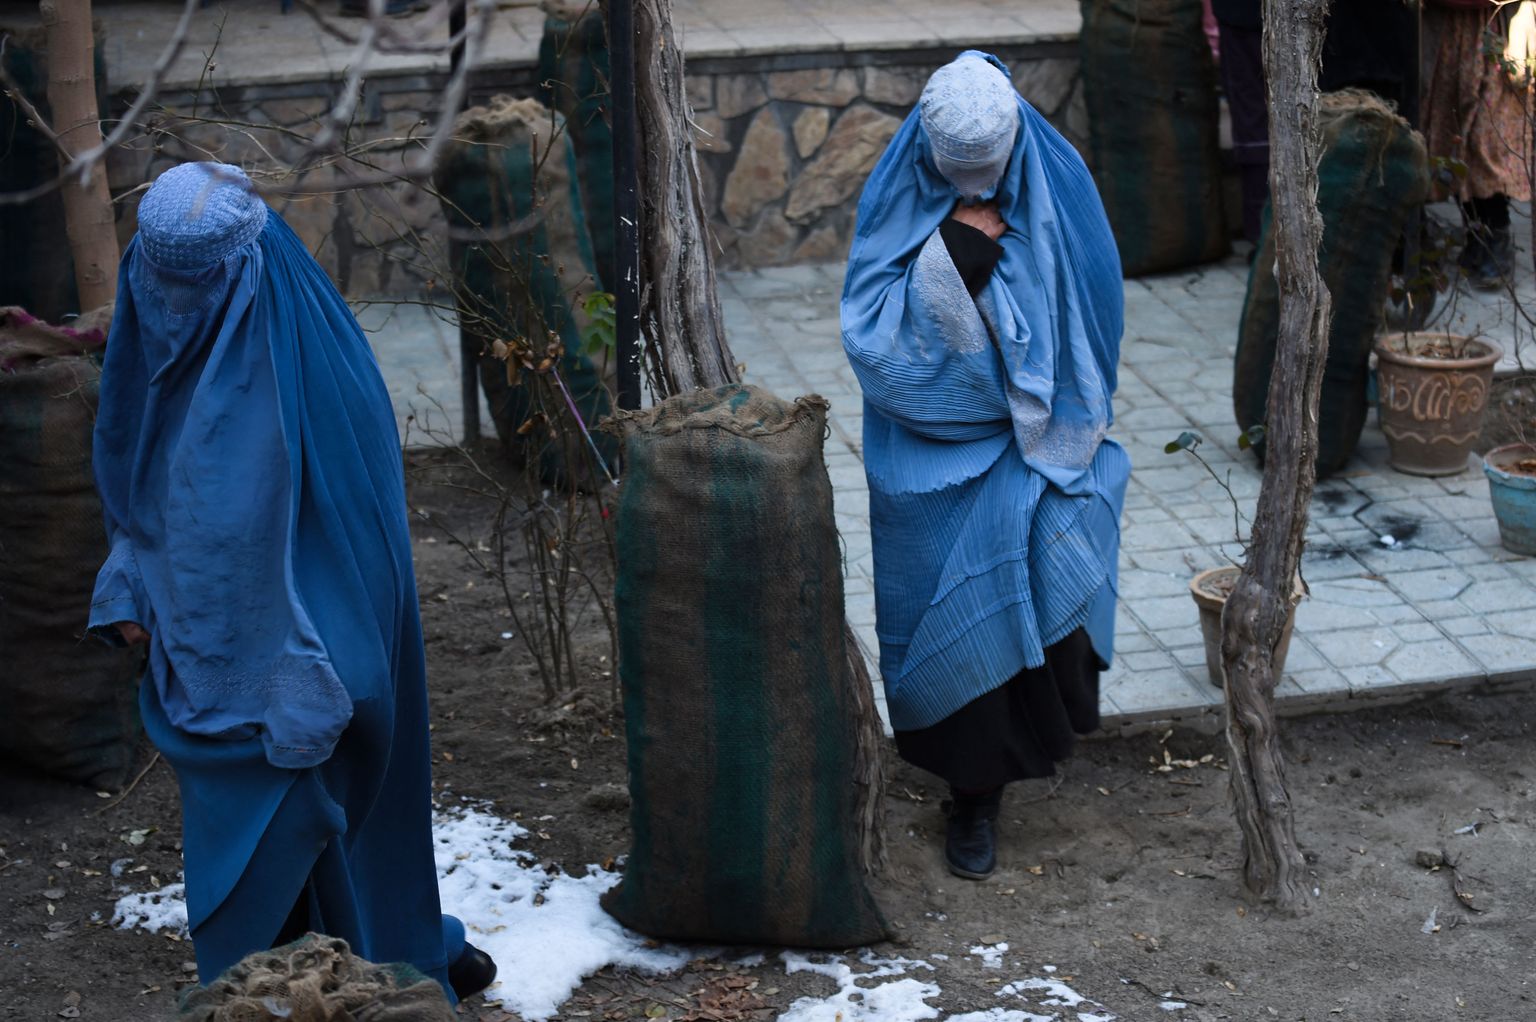 Naised Kabulis vabatahtlike poolt jagatud söekotiga.